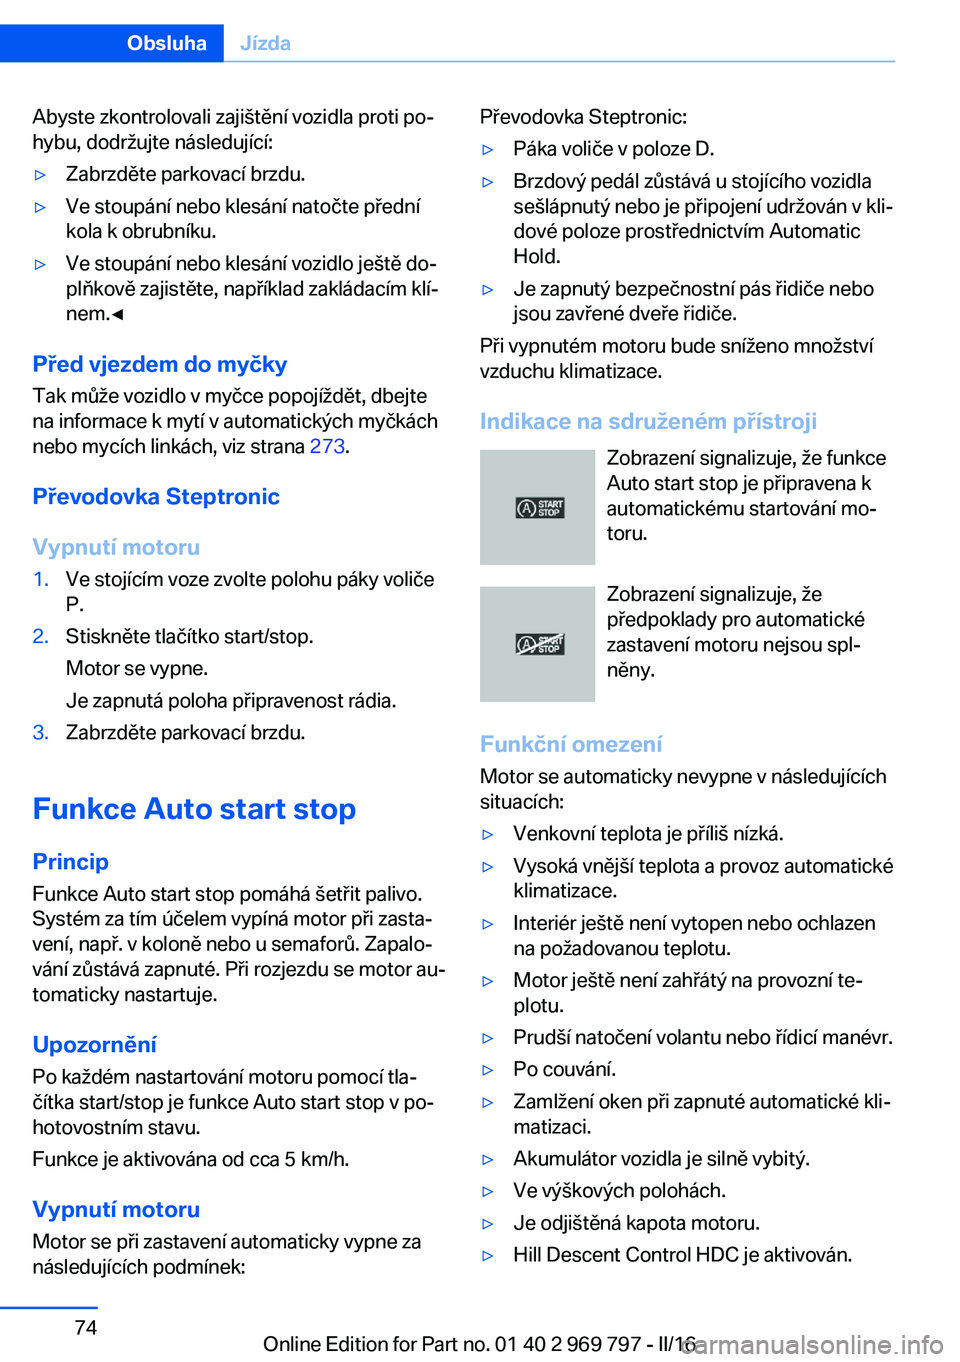 BMW X5 2016  Návod na použití (in Czech) Abyste zkontrolovali zajištění vozidla proti po‐
hybu, dodržujte následující:▷Zabrzděte parkovací brzdu.▷Ve stoupání nebo klesání natočte přední
kola k obrubníku.▷Ve stoupán�